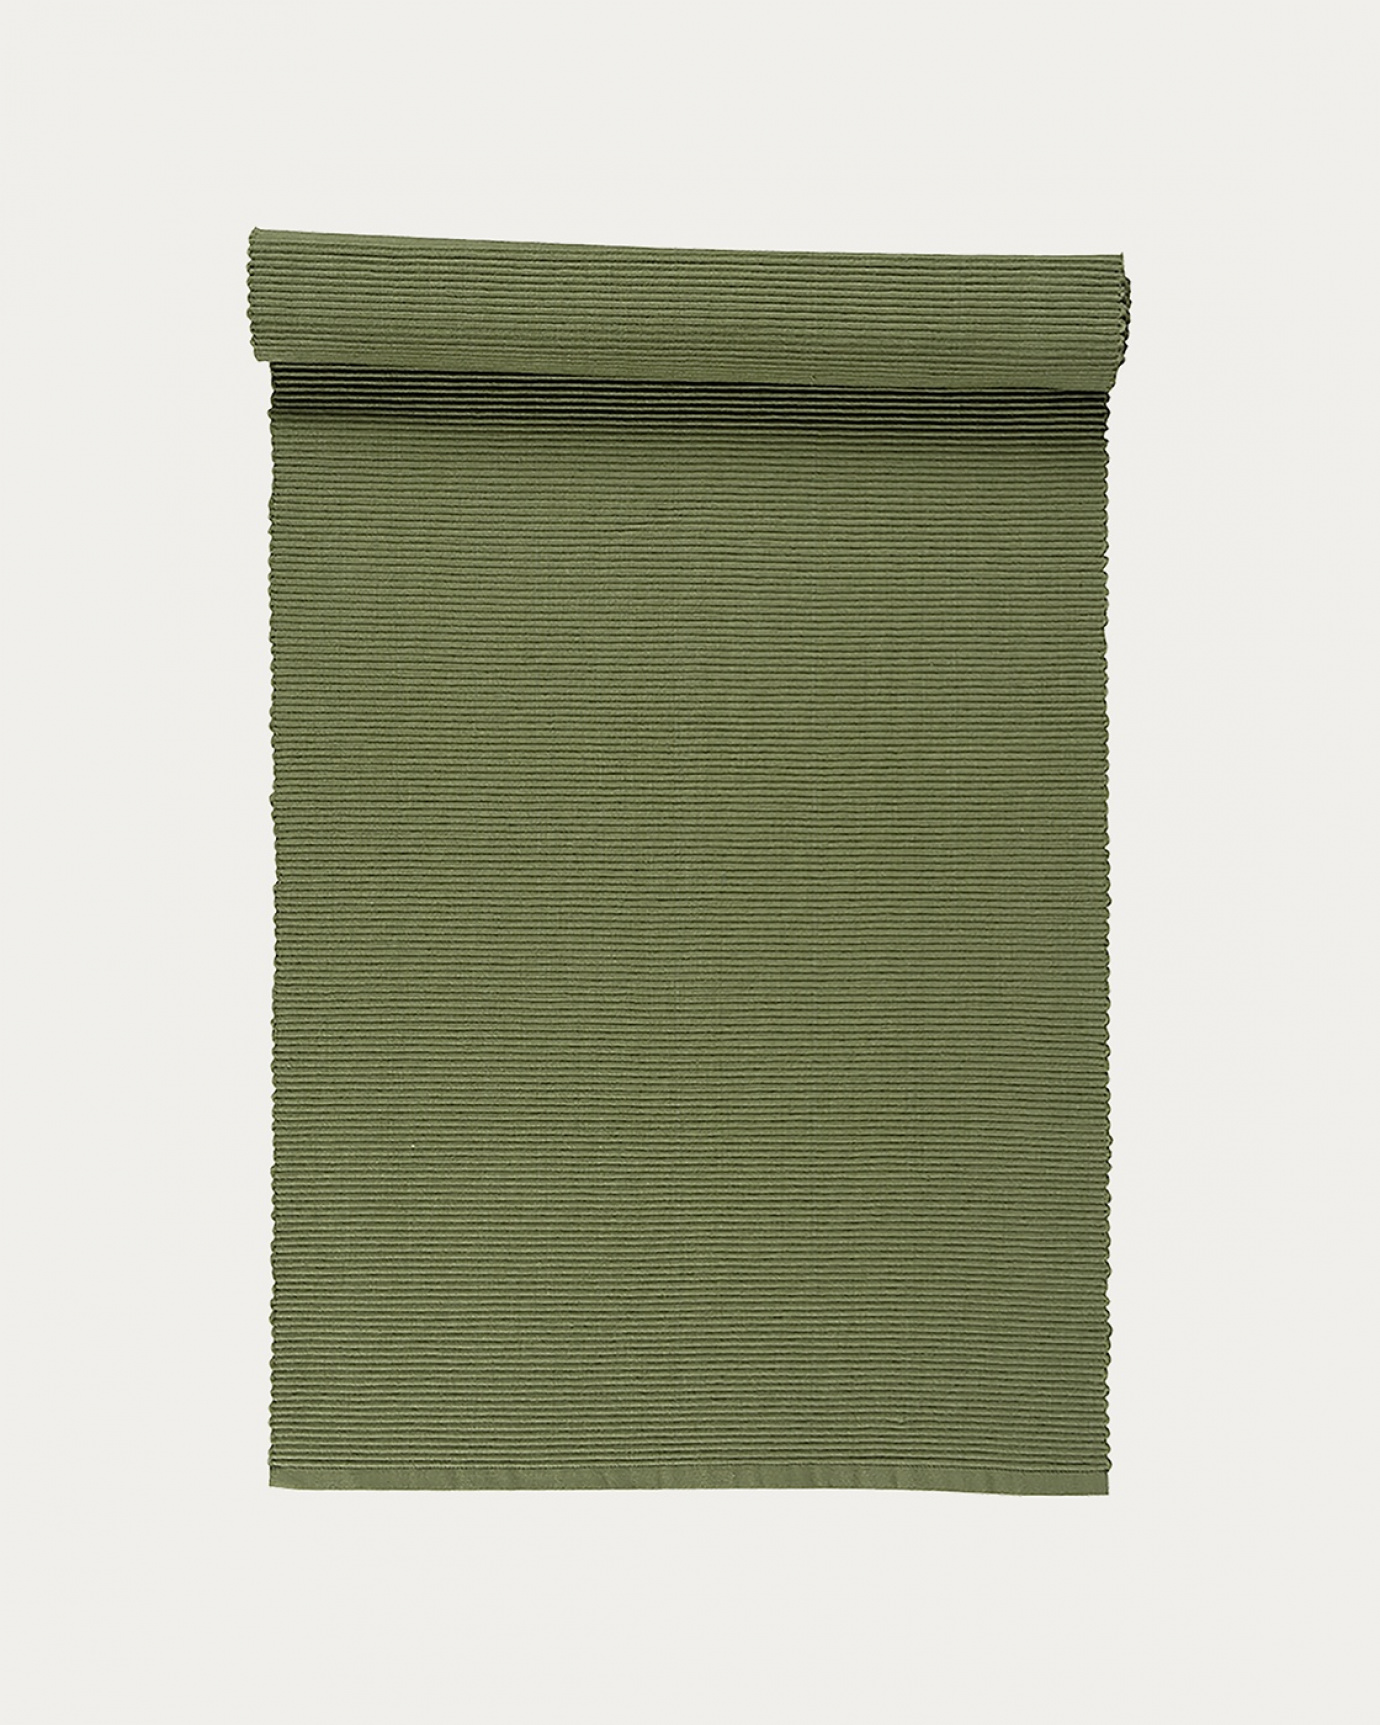 Immagine prodotto verde cipresso chiaro runner UNI in morbido cotone a costine di qualità di LINUM DESIGN. Dimensioni 45x150 cm.